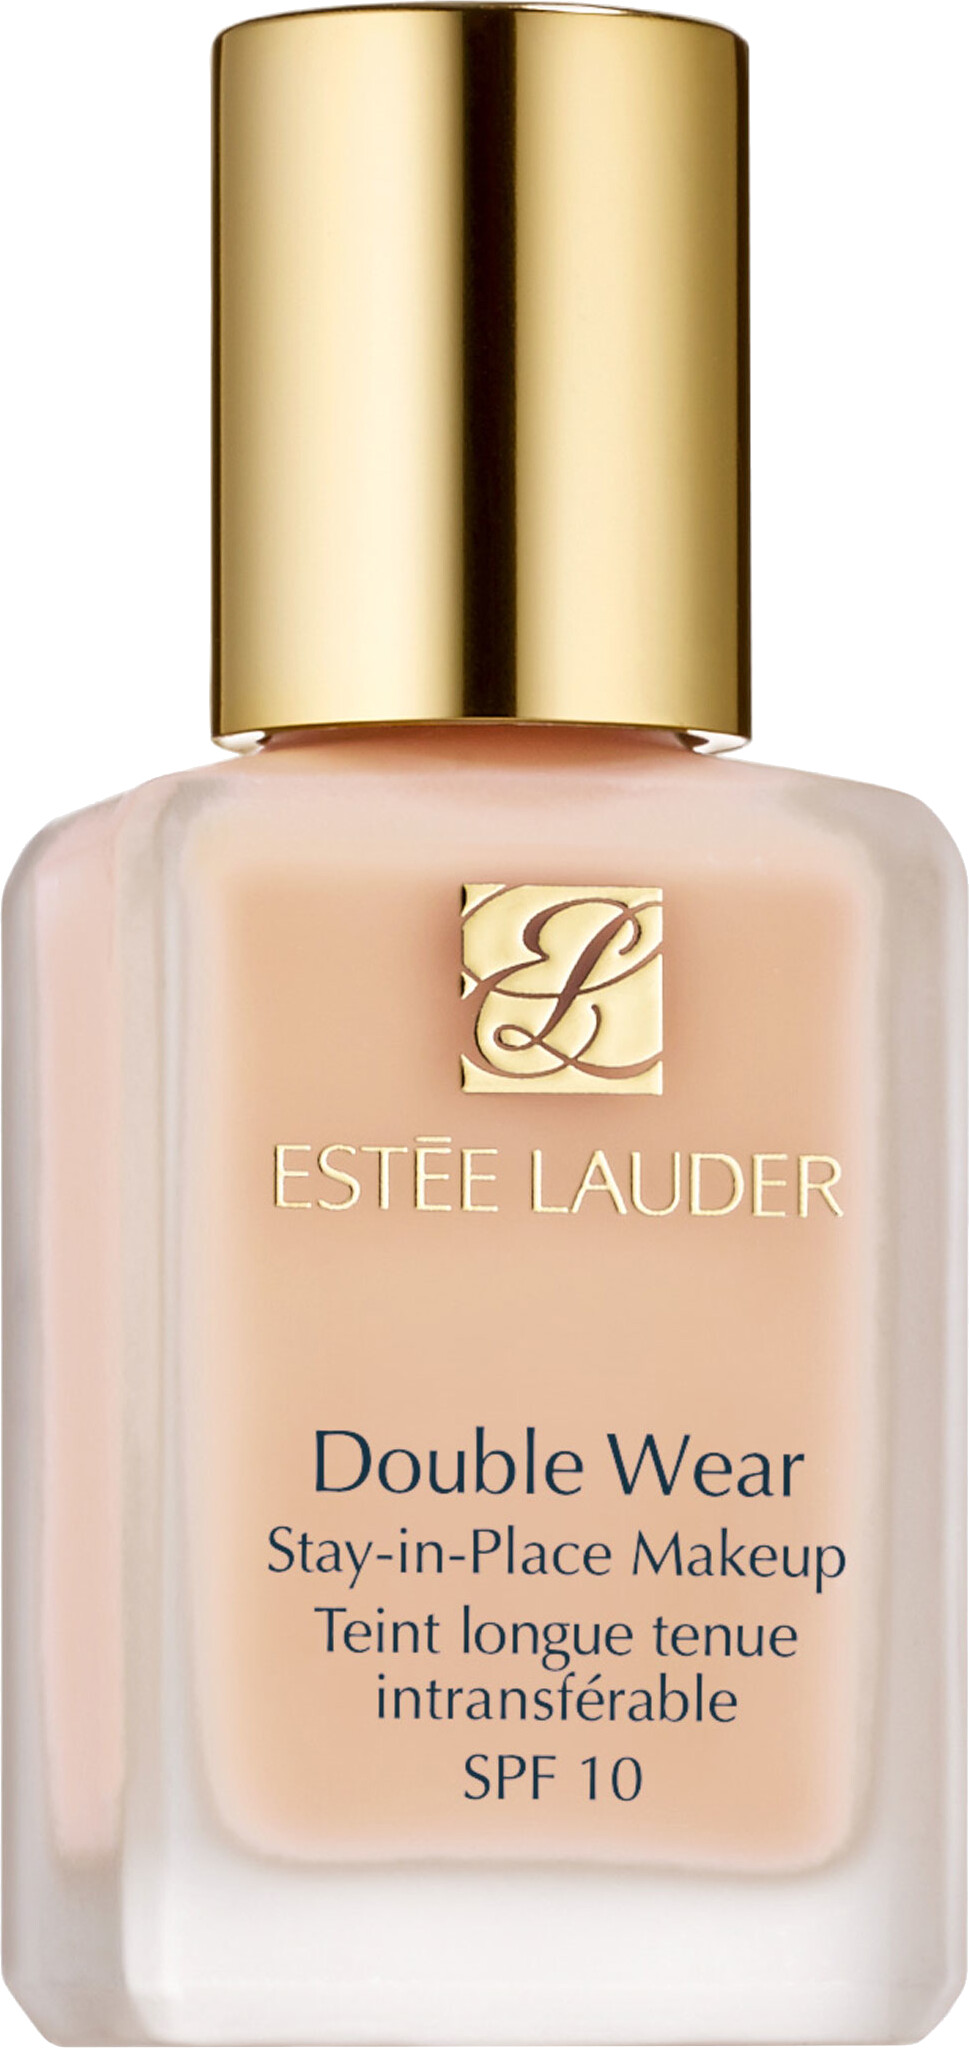 Estee Lauder Double Wear Stay-in-Place Foundation SPF10 30ml 1W1 - Bone